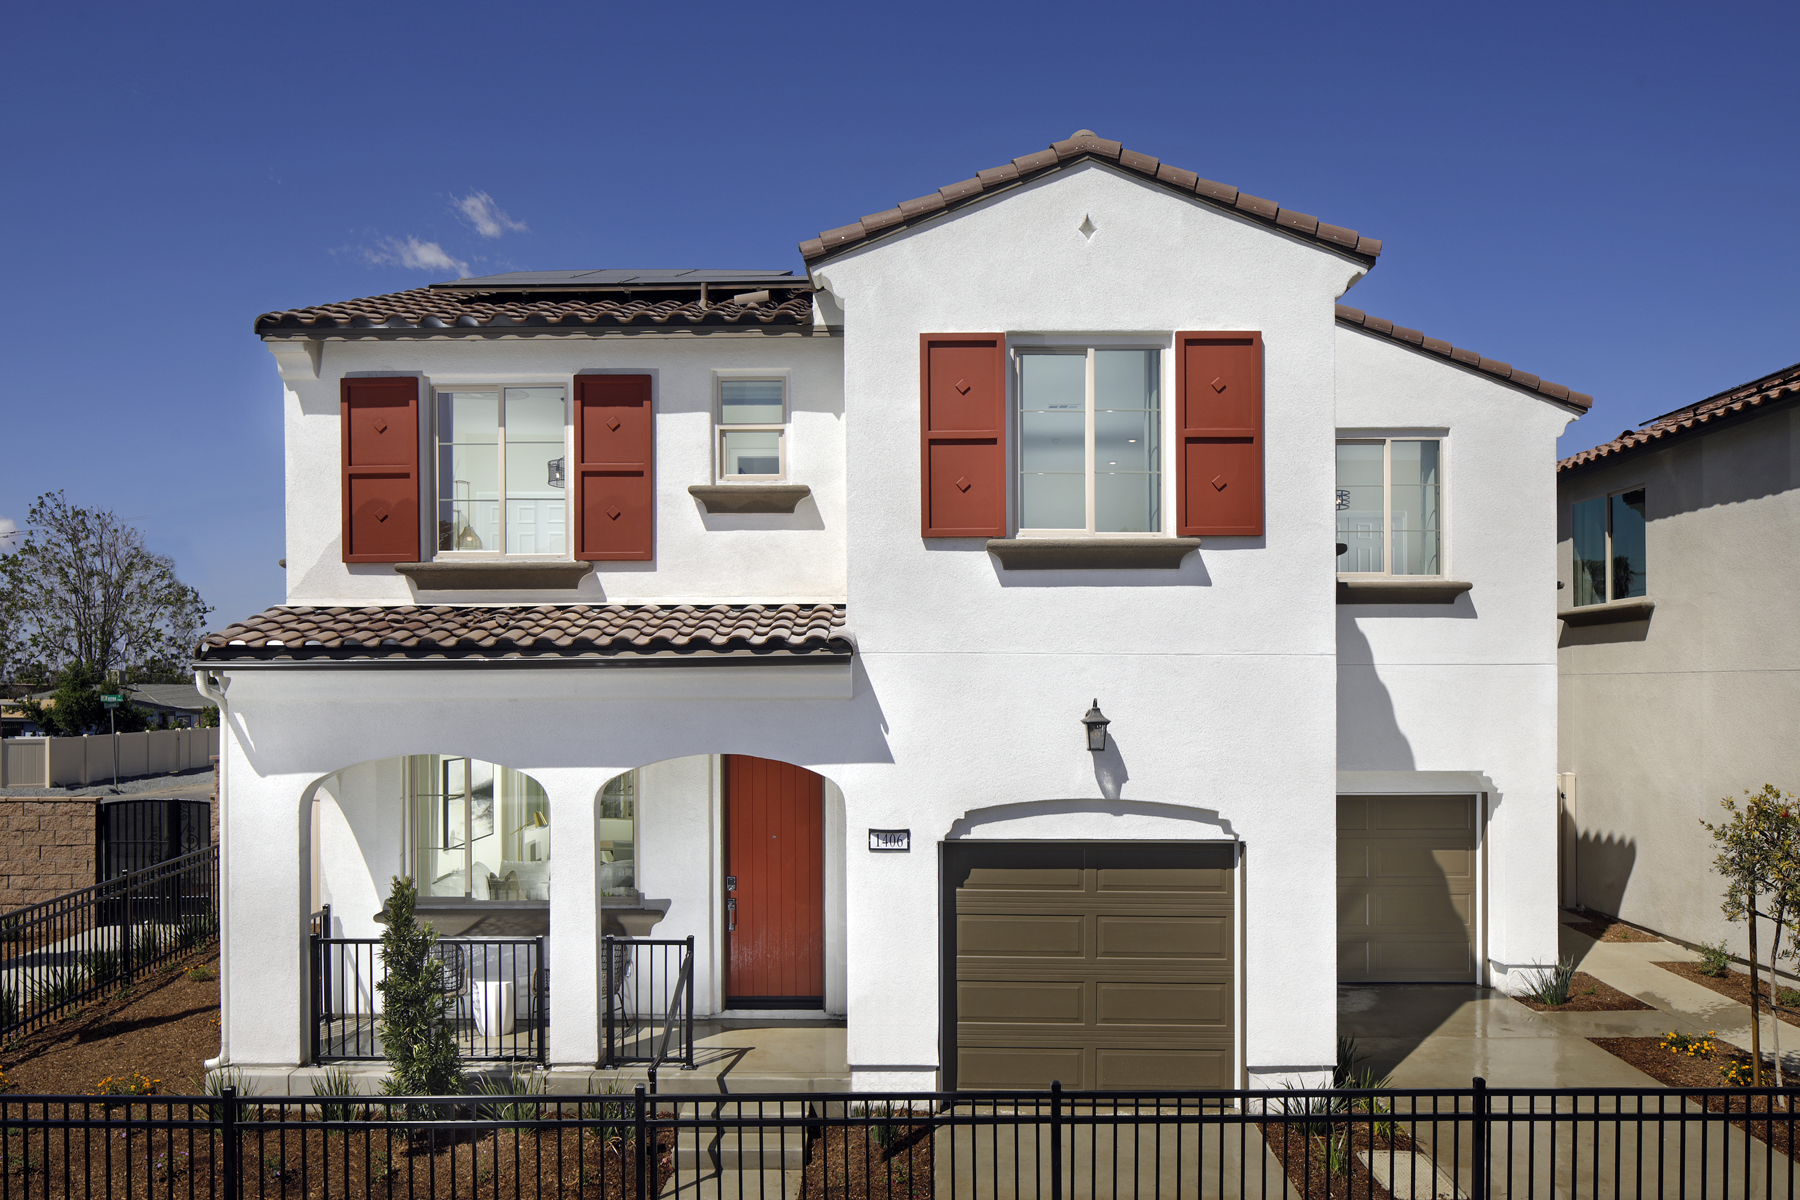 Model home at The Enclave in San Bernardino, CA